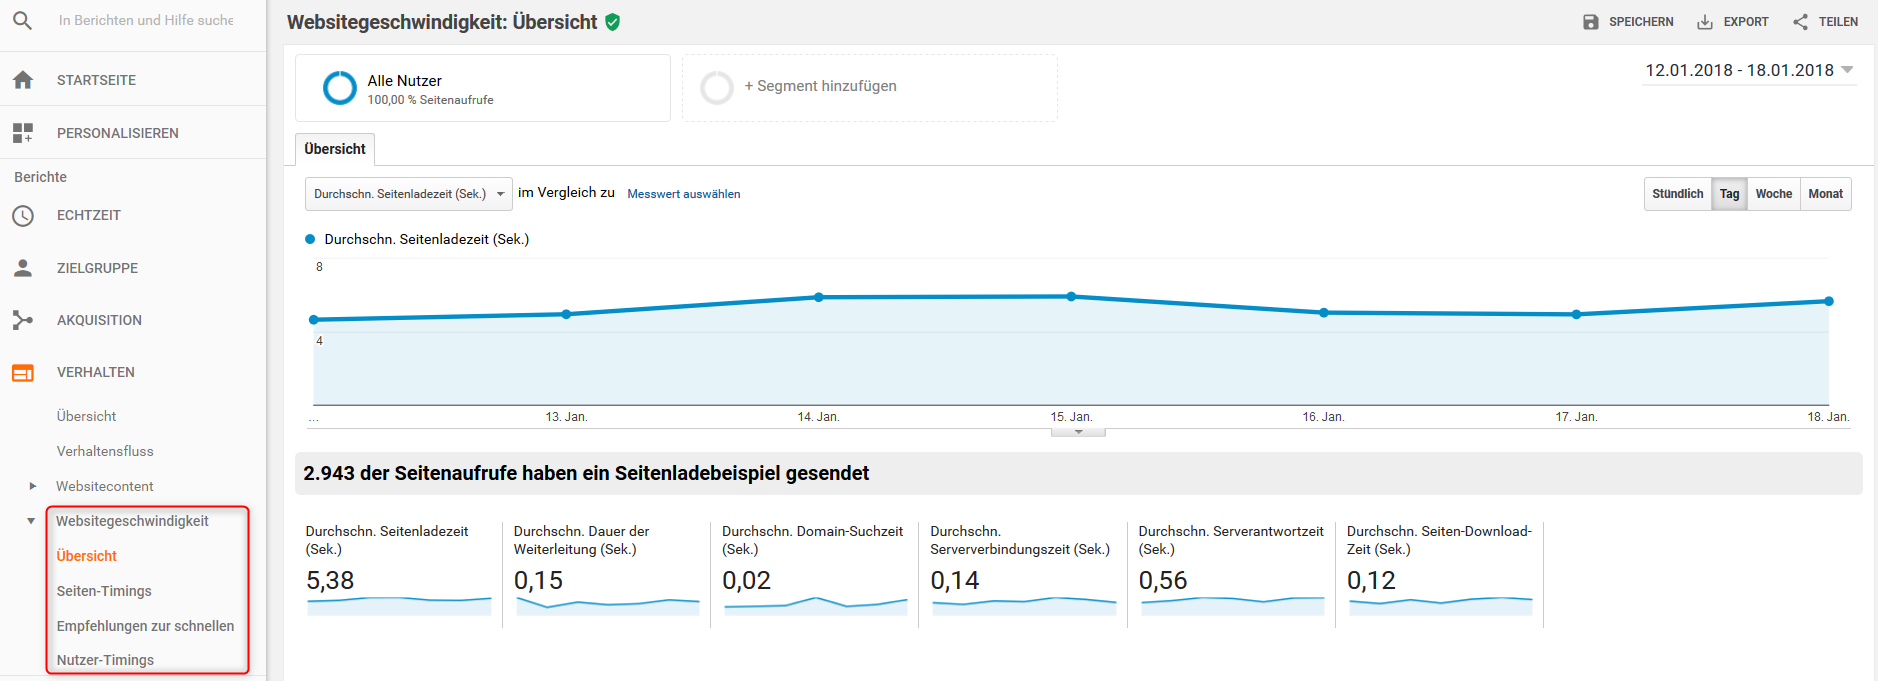 Websitegeschwindigkeit in Google Analytics als SEO-Indikator